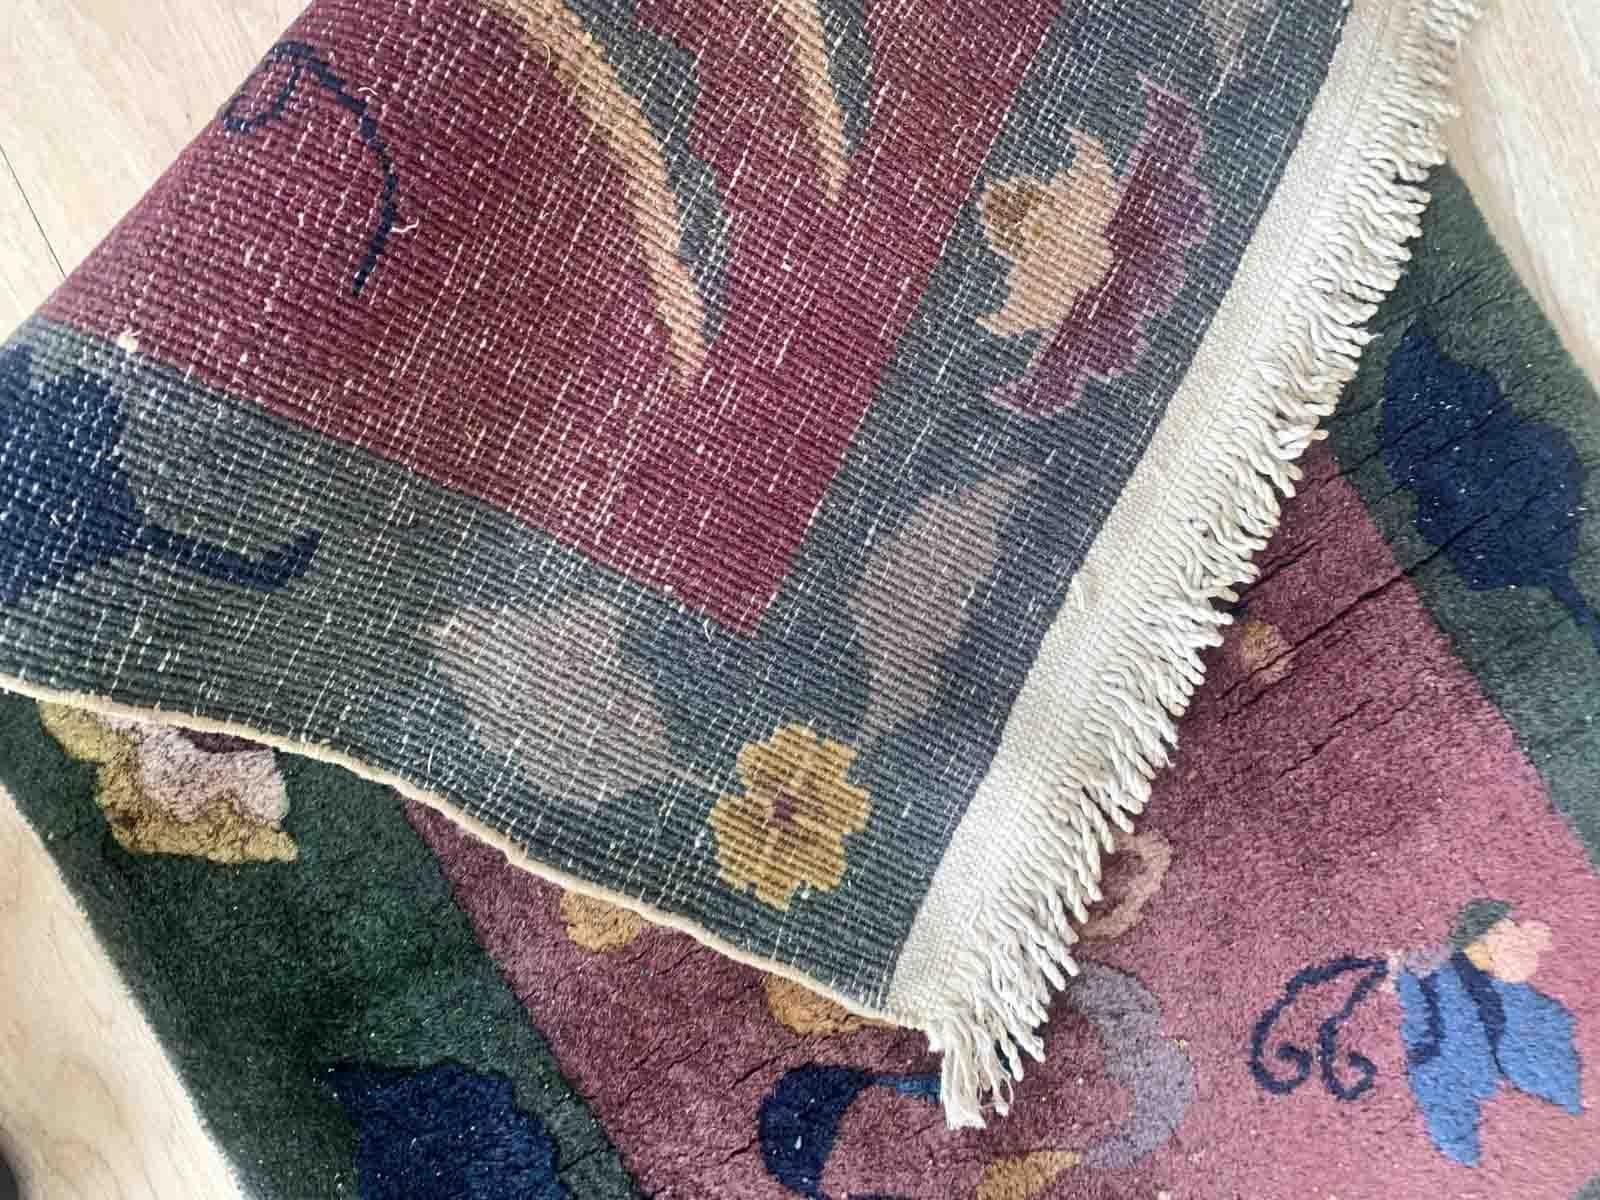 Dieser exquisite handgefertigte antike chinesische Art-Déco-Teppich ist ein wahrer Schatz aus den 1920er Jahren. Mit seinen kompakten Maßen von 64 cm x 128 cm ist er perfekt geeignet, um jedem Raum in Ihrem Zuhause einen Hauch von Eleganz zu